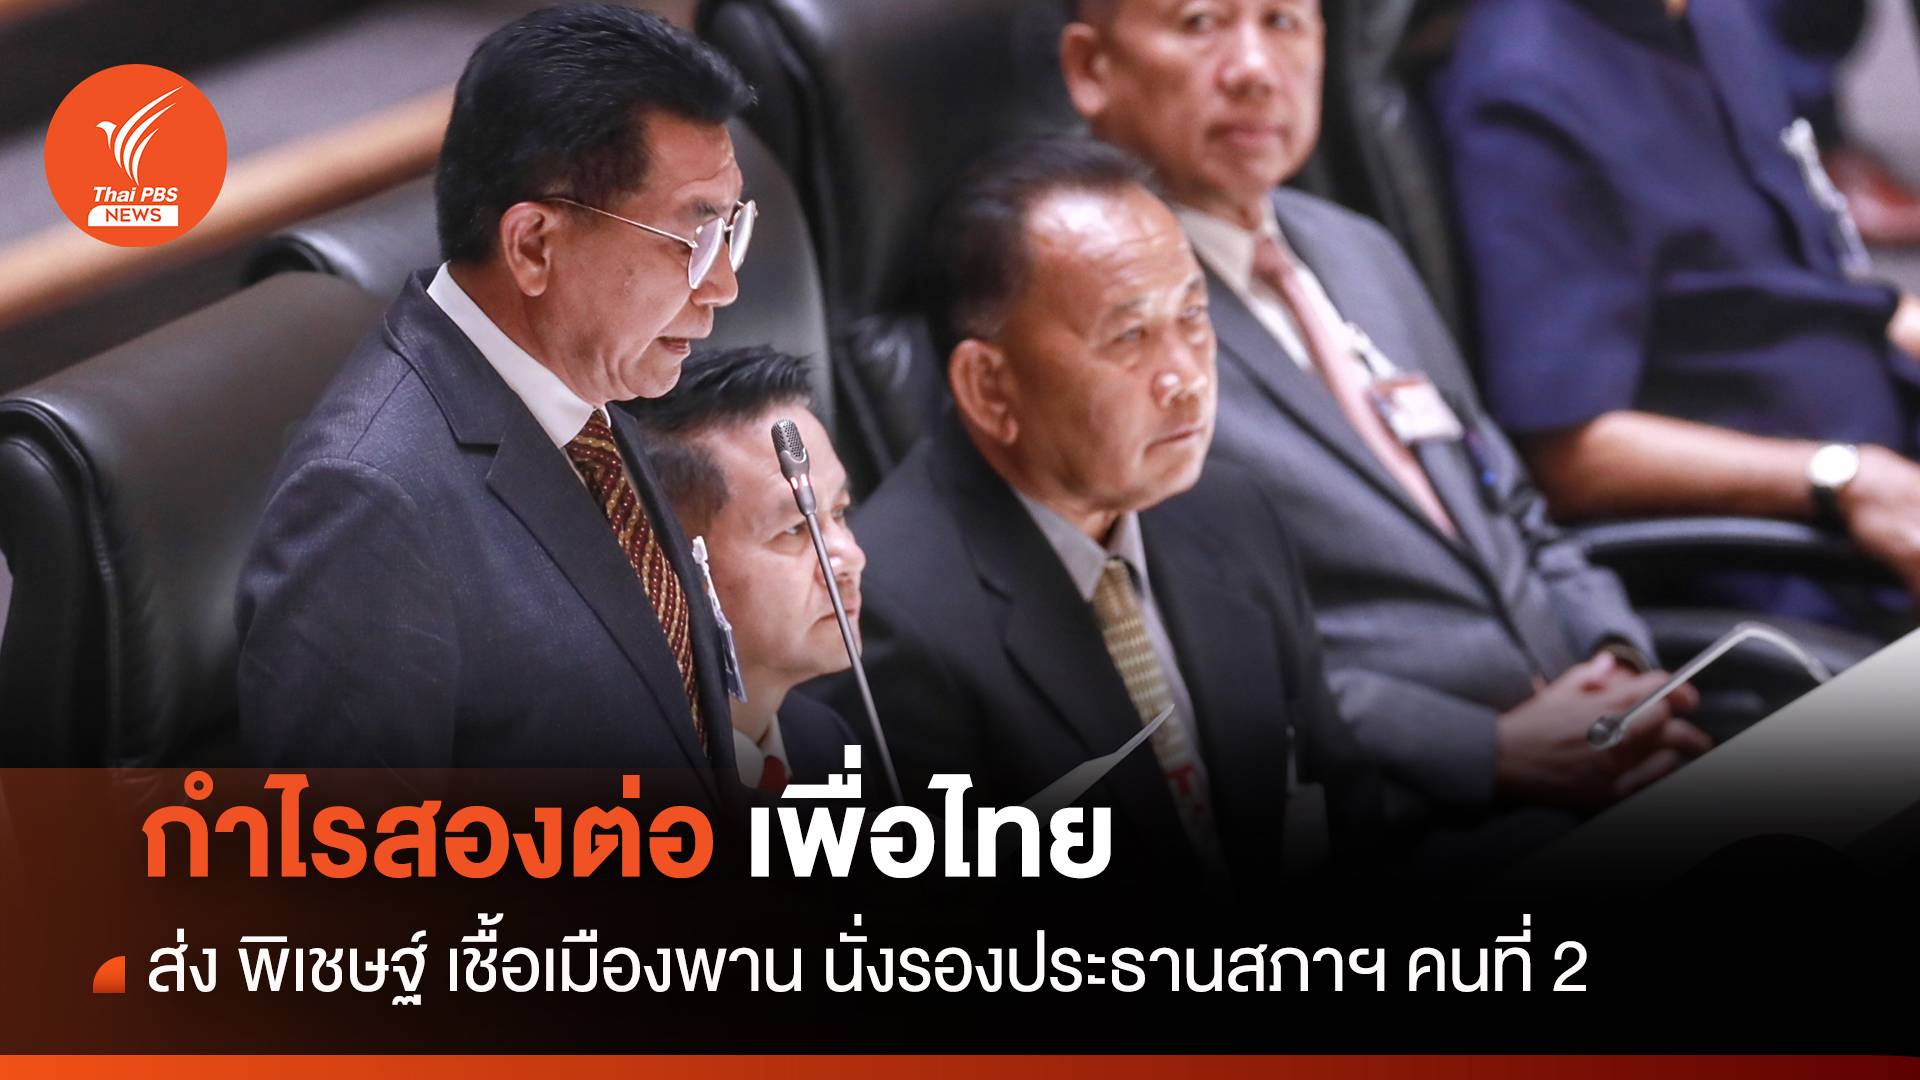 กำไรสองต่อ เพื่อไทย ส่ง "พิเชษฐ์" นั่งรองประธานสภาฯ คนที่ 2